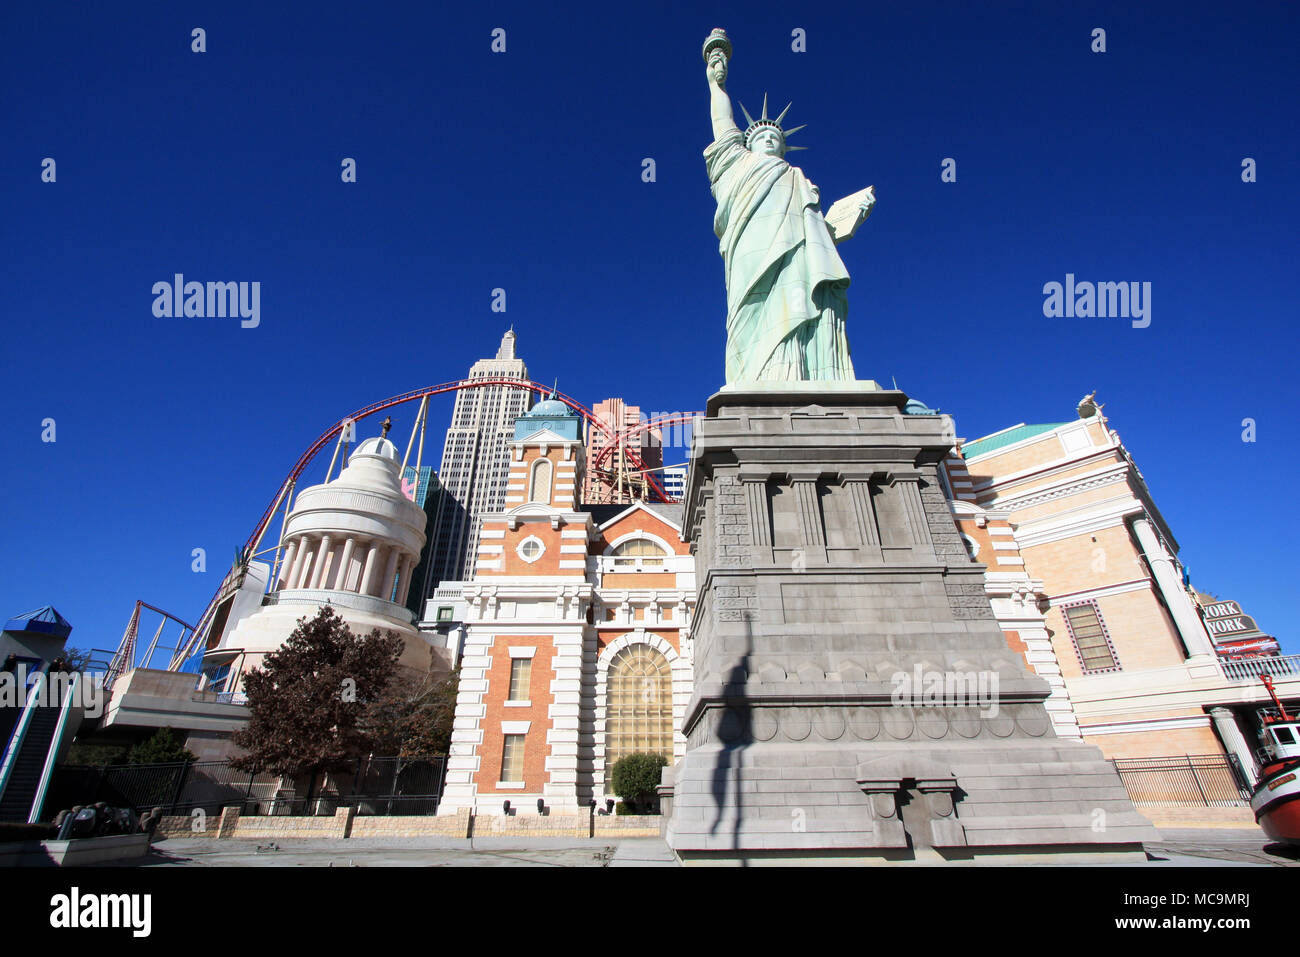 Vista de la réplica de la Estatua de la libertad en la parte delantera de la artificial NYC skyline y la montaña rusa del New York-New York, Las Vegas, NV, EE.UU. Foto de stock